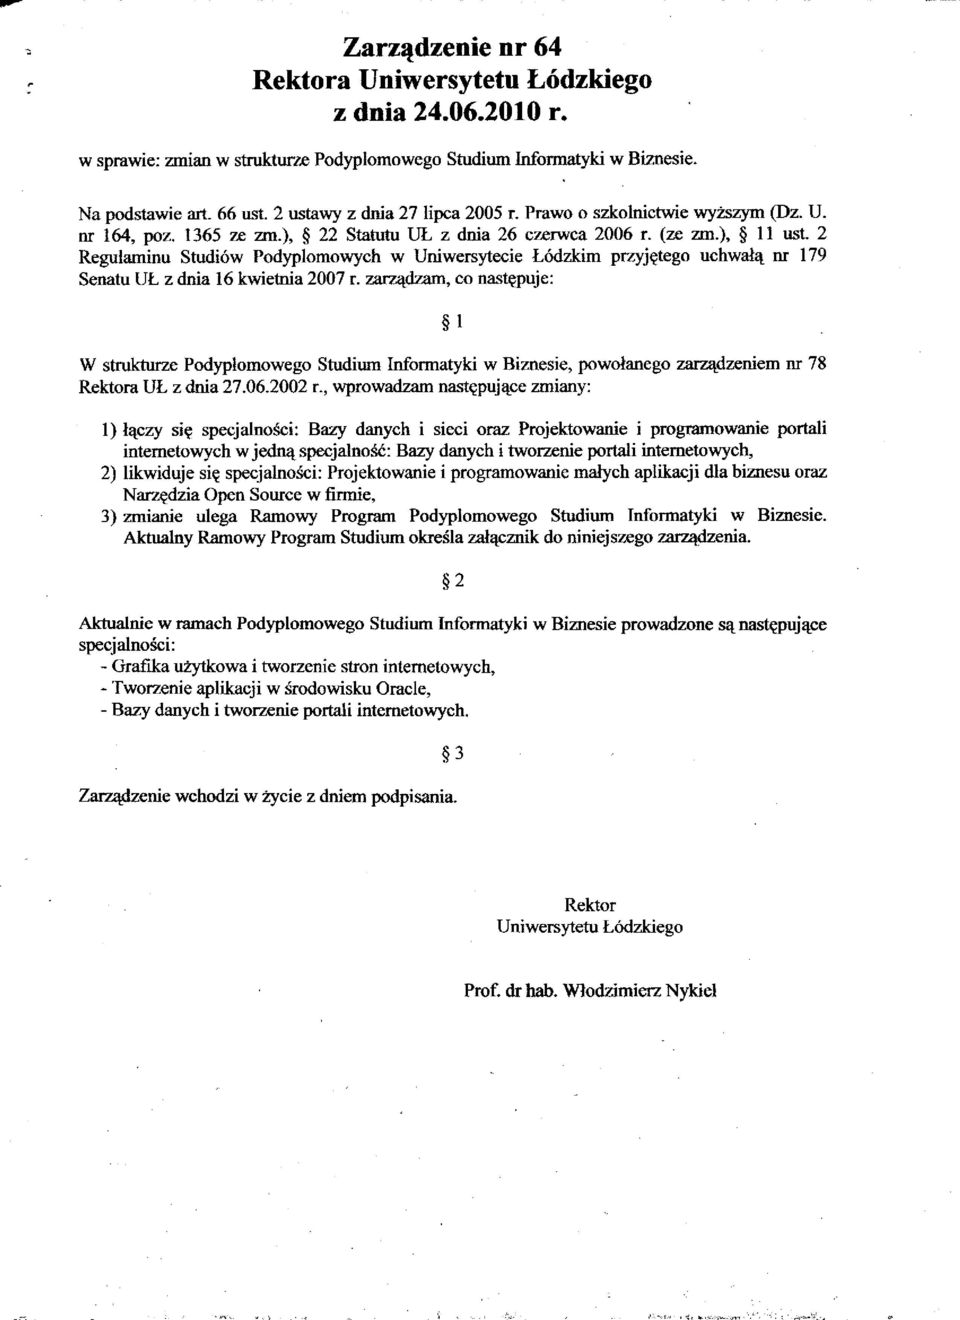 2 Regulaminu Studiów Podyplomowych w Uniwersytecie Łódzkim przyjętego uchwałą nr 179 Senatu UŁ z dnia 16 kwietnia 2007 r.